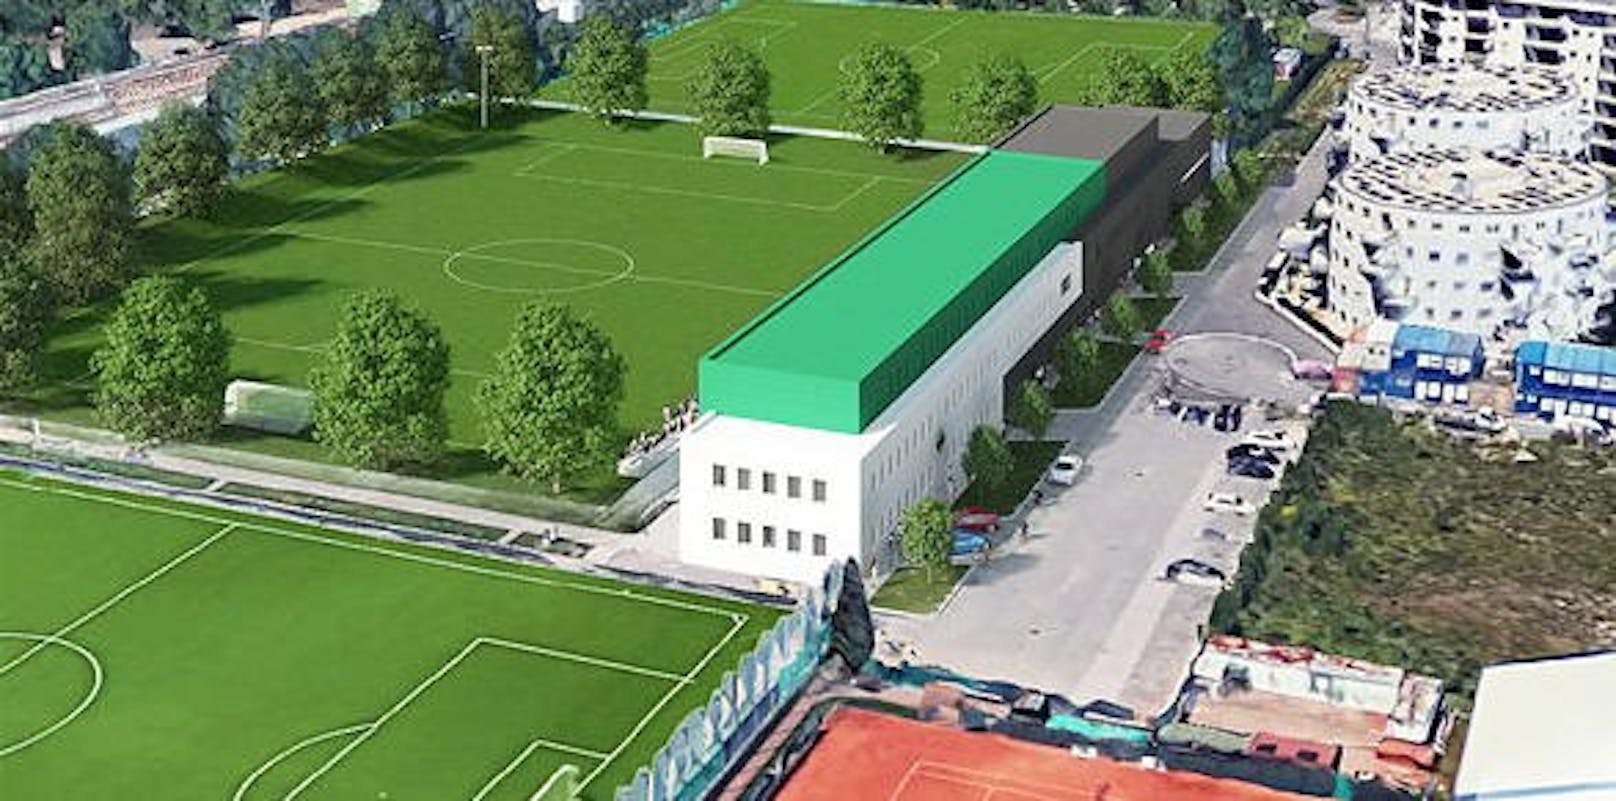 Erfreulich: Auf der Mitgliederversammlung wurden endlich die Pläne für das neue Trainingszentrum präsentiert. Es entsteht in unmittelbarer Nähe zum Happel-Stadion und soll 2021 eröffnet werden.